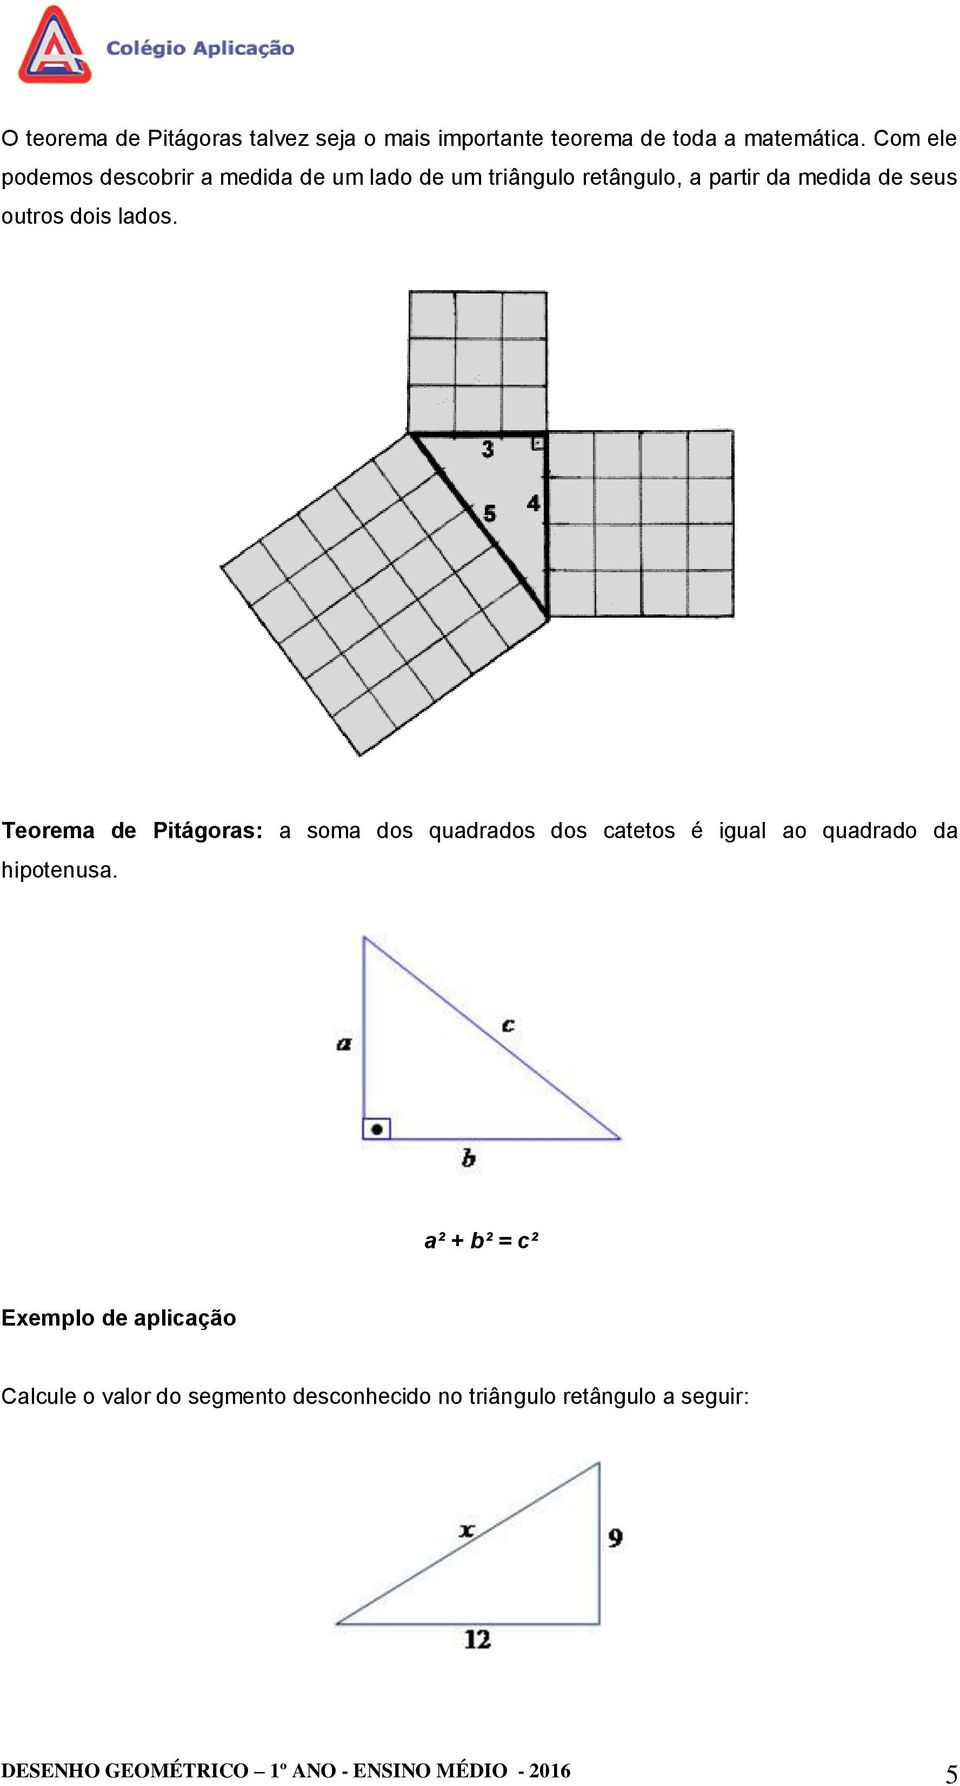 lados. Teorema de Pitágoras: a soma dos quadrados dos catetos é igual ao quadrado da hipotenusa.